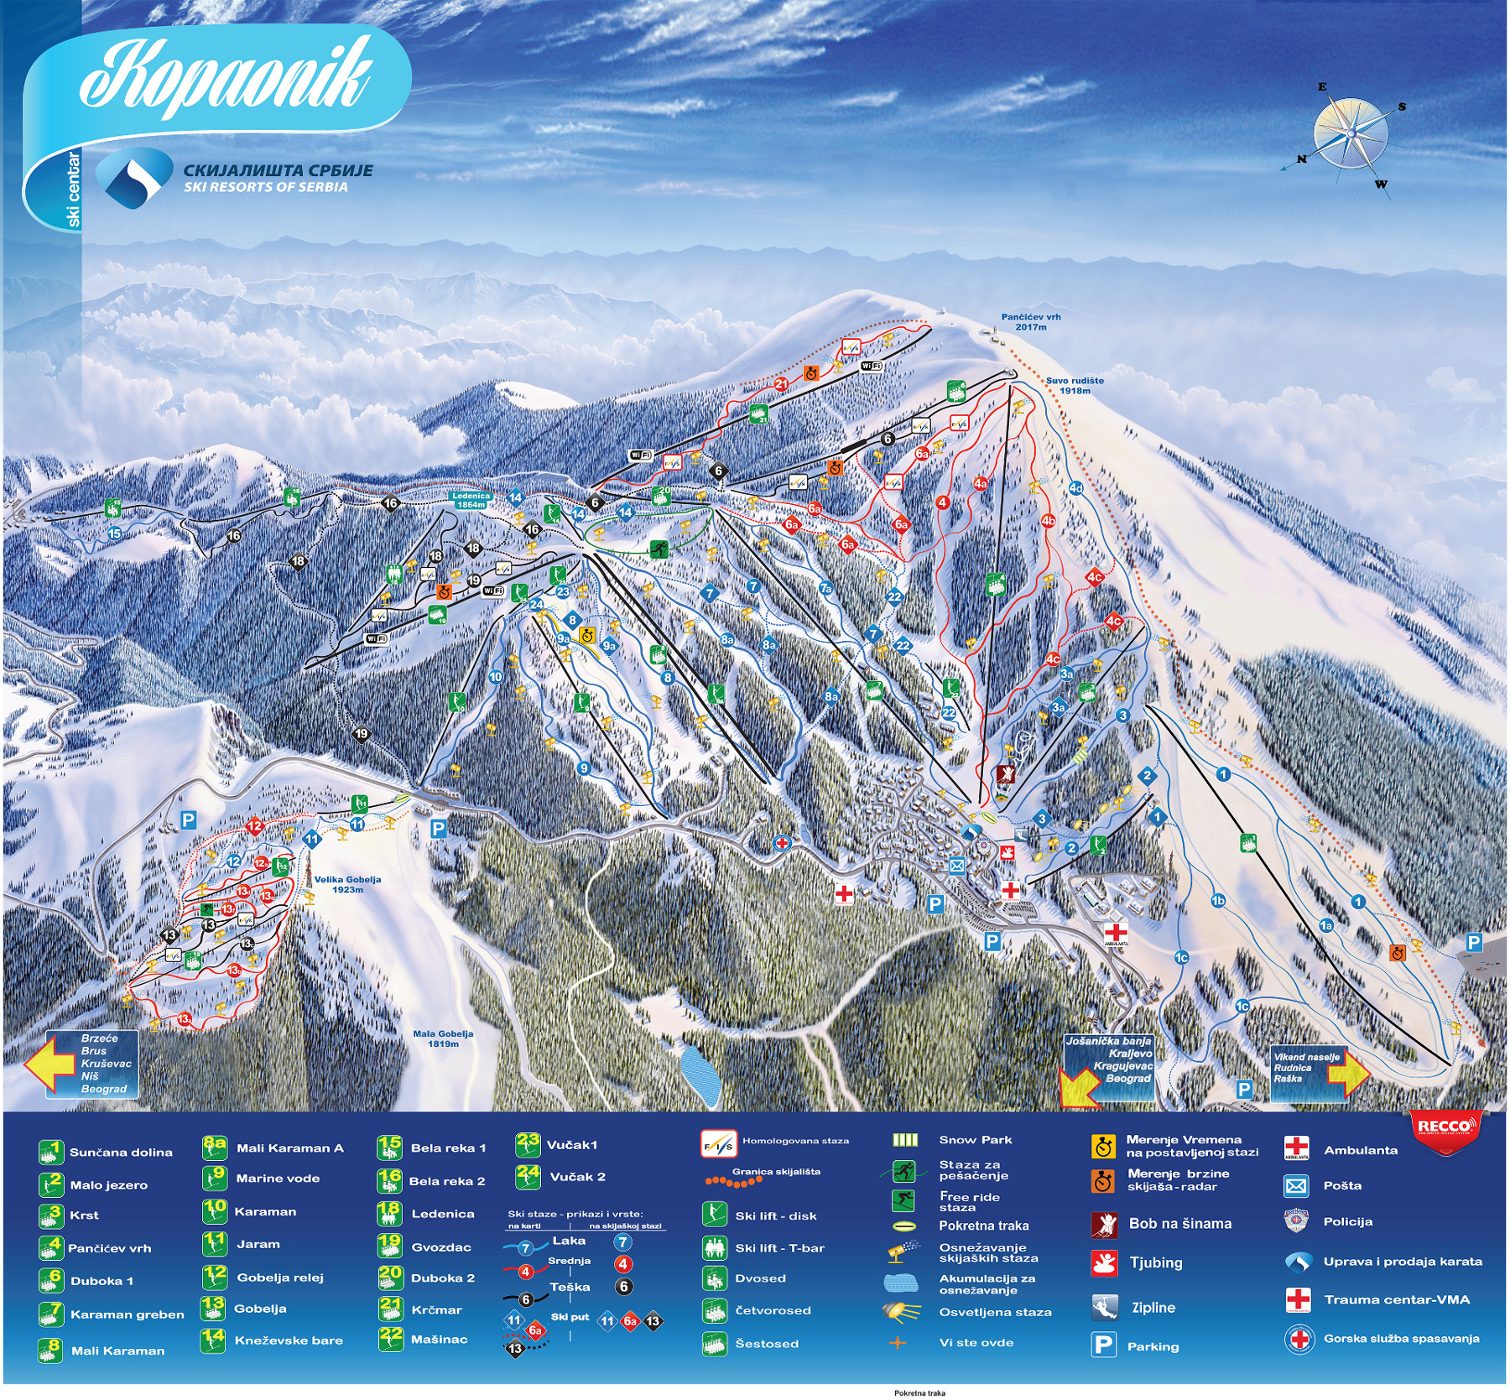 karta srbije kopaonik Mapa skijališta | Skijališta Srbije karta srbije kopaonik